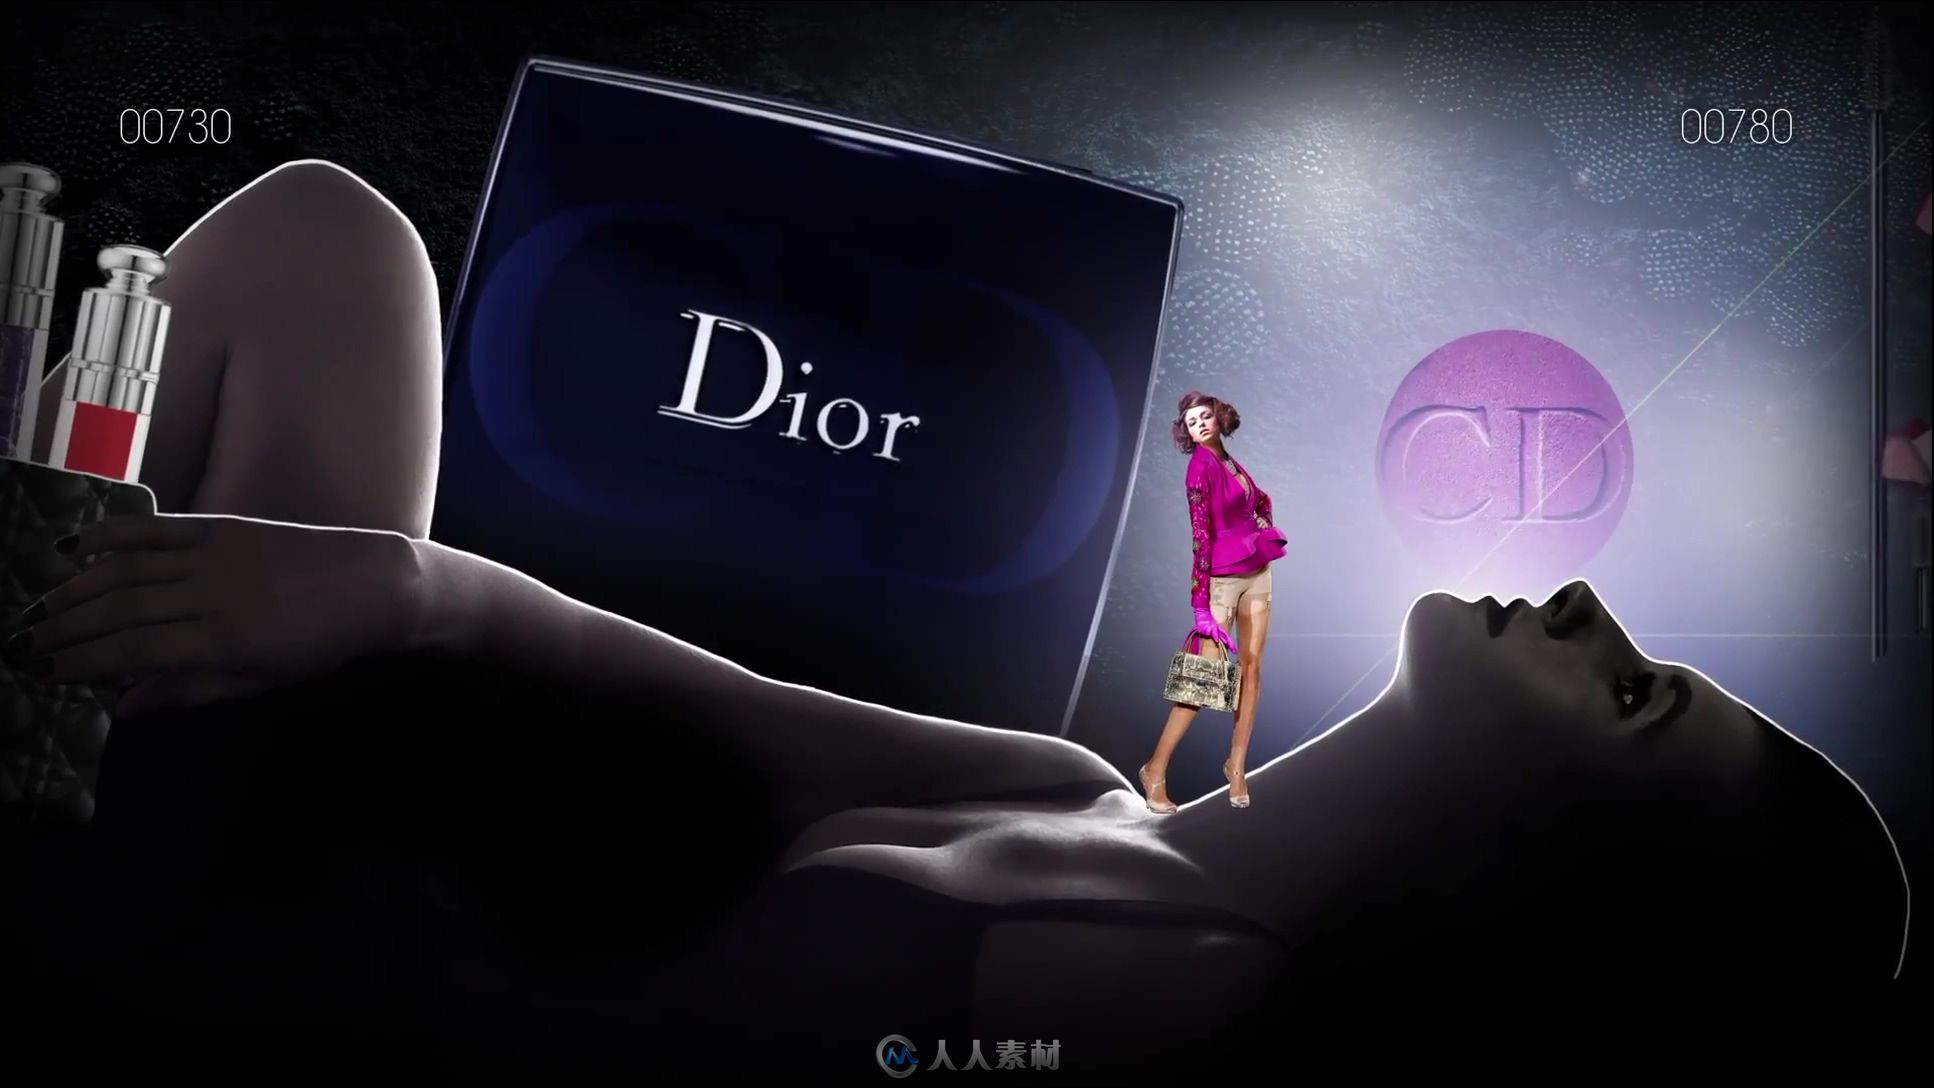 欧美时尚广告赏析 Dior迪奥广告.GAMES.1080p